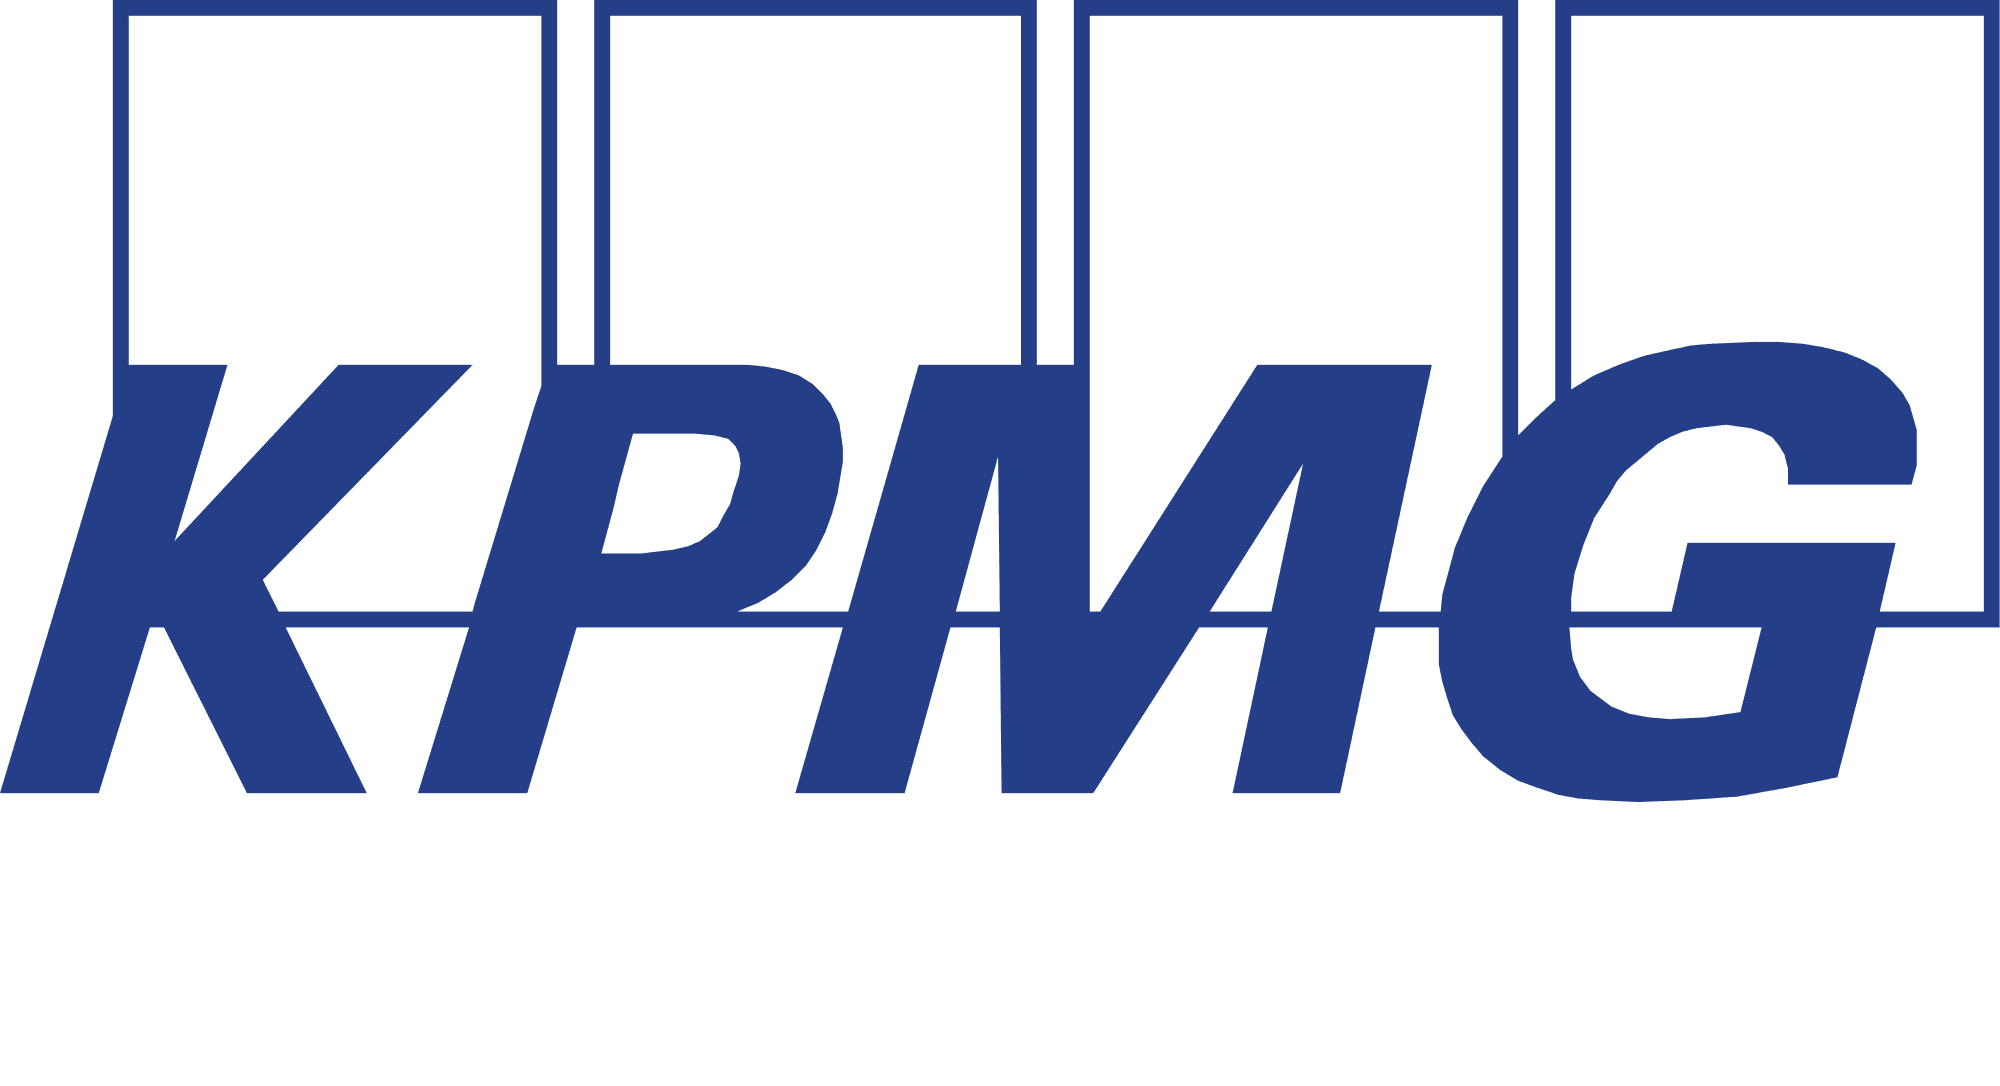 KPMG-logo.png